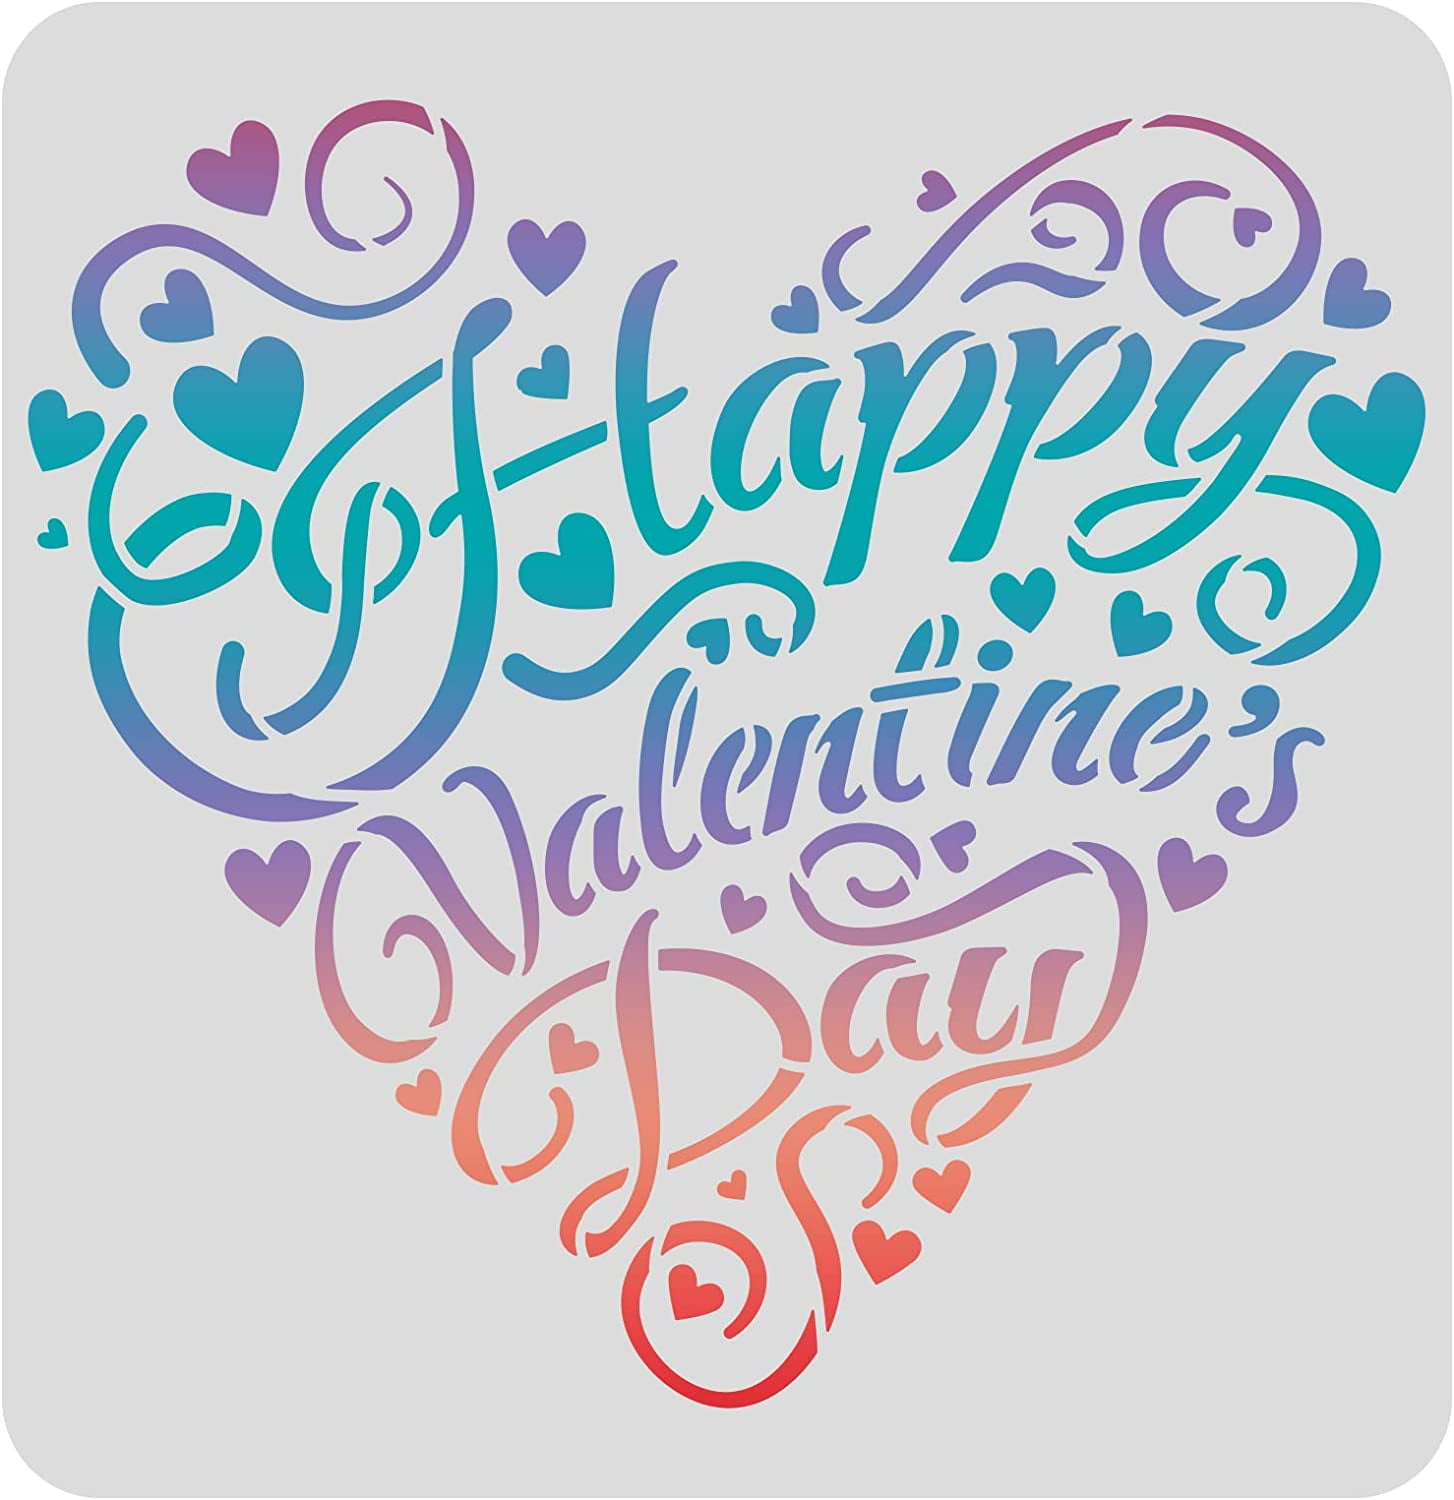 9269 Happy Valentine's Day Stencil